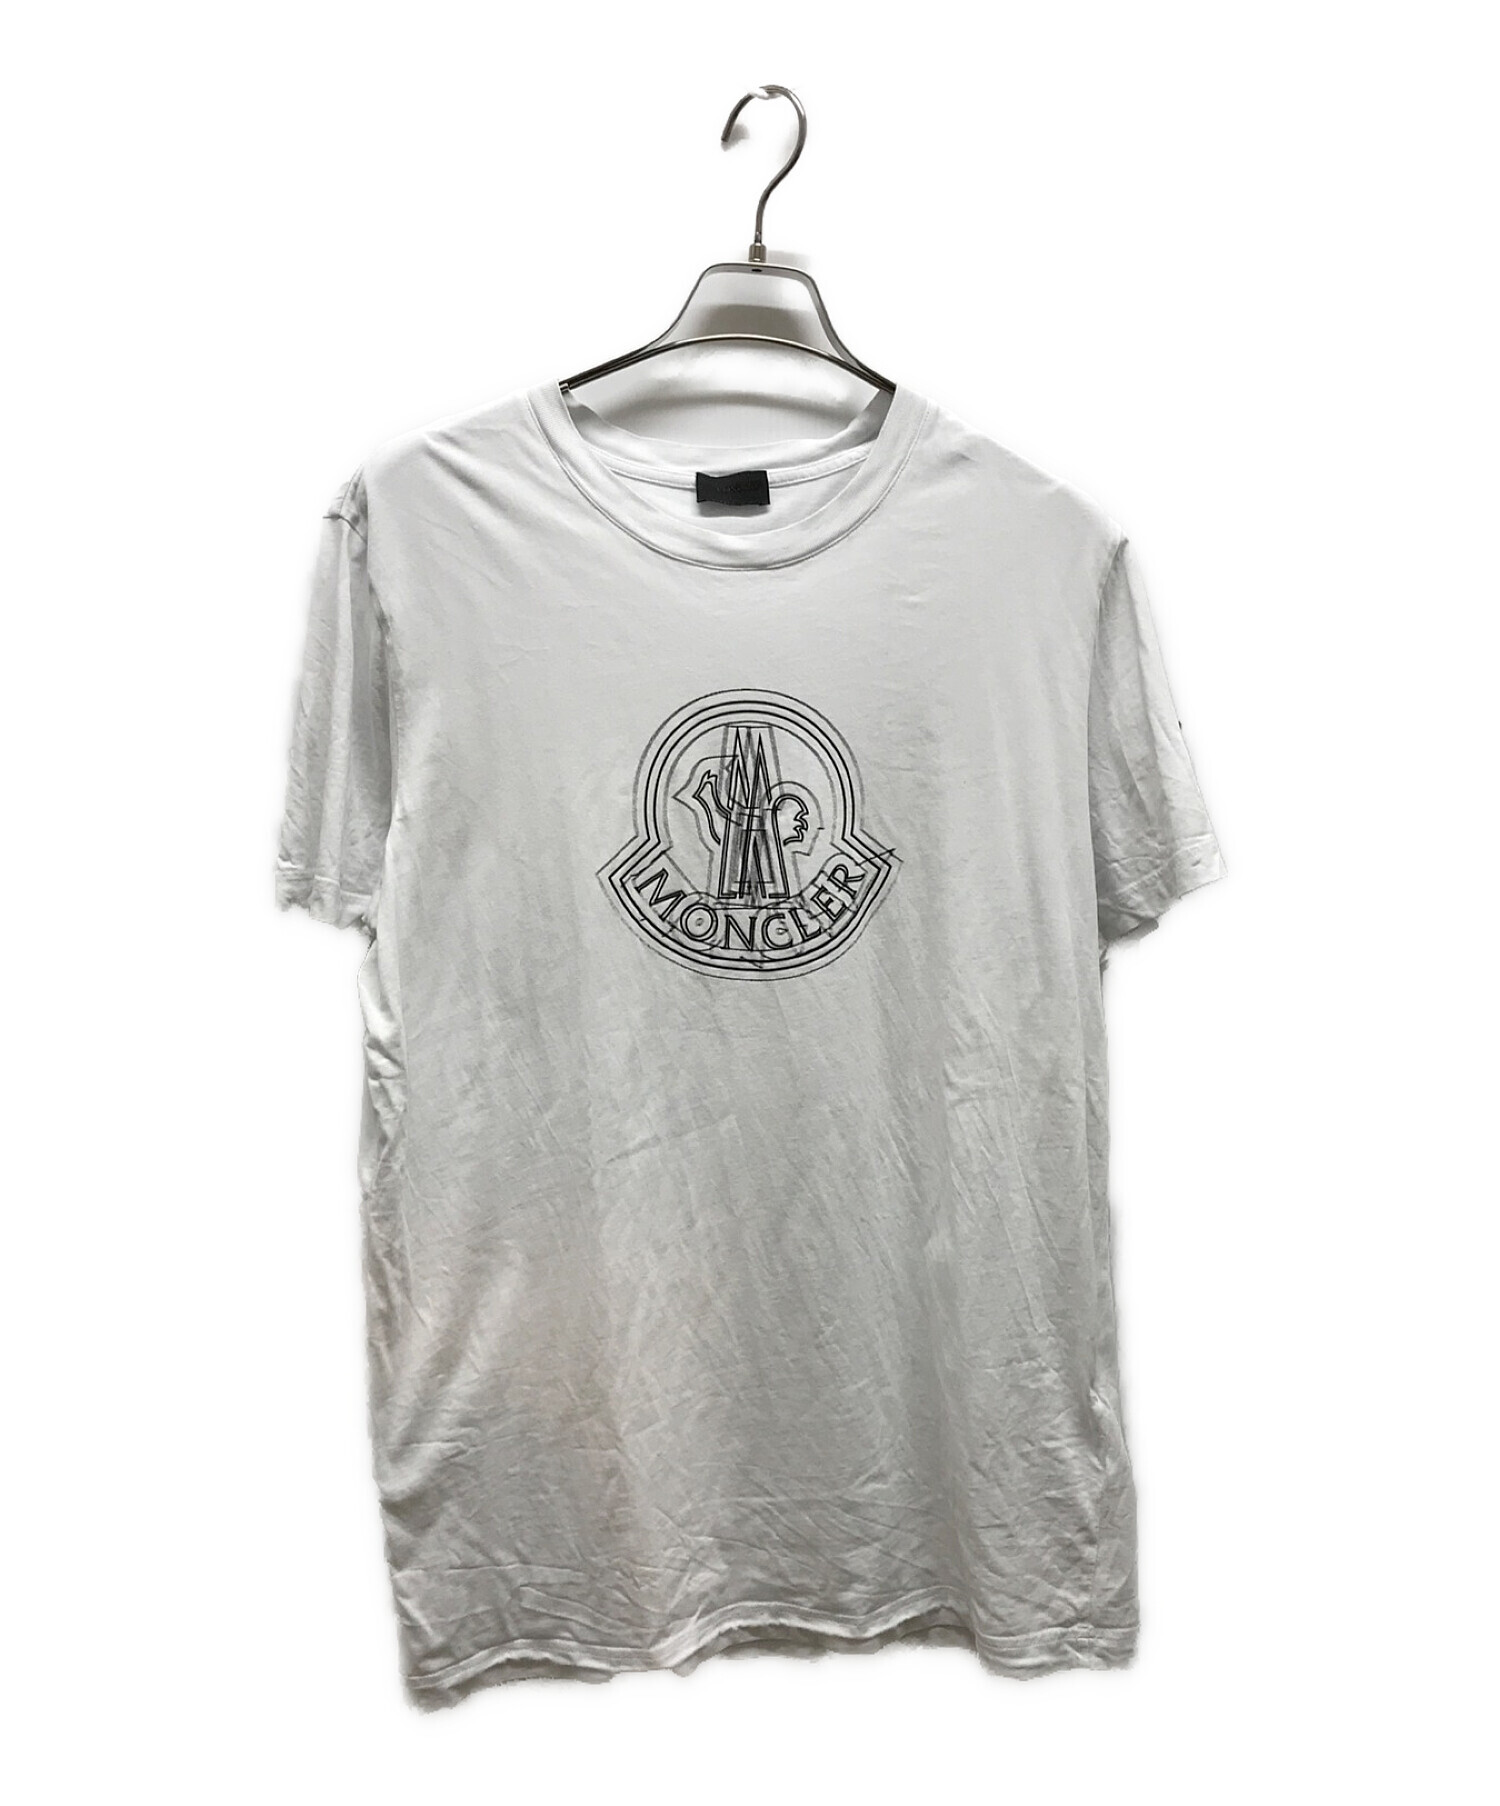 MONCLER モンクレール 反転ロゴ Tシャツ 大きめ 3XLサイズ ホワイトブラック白